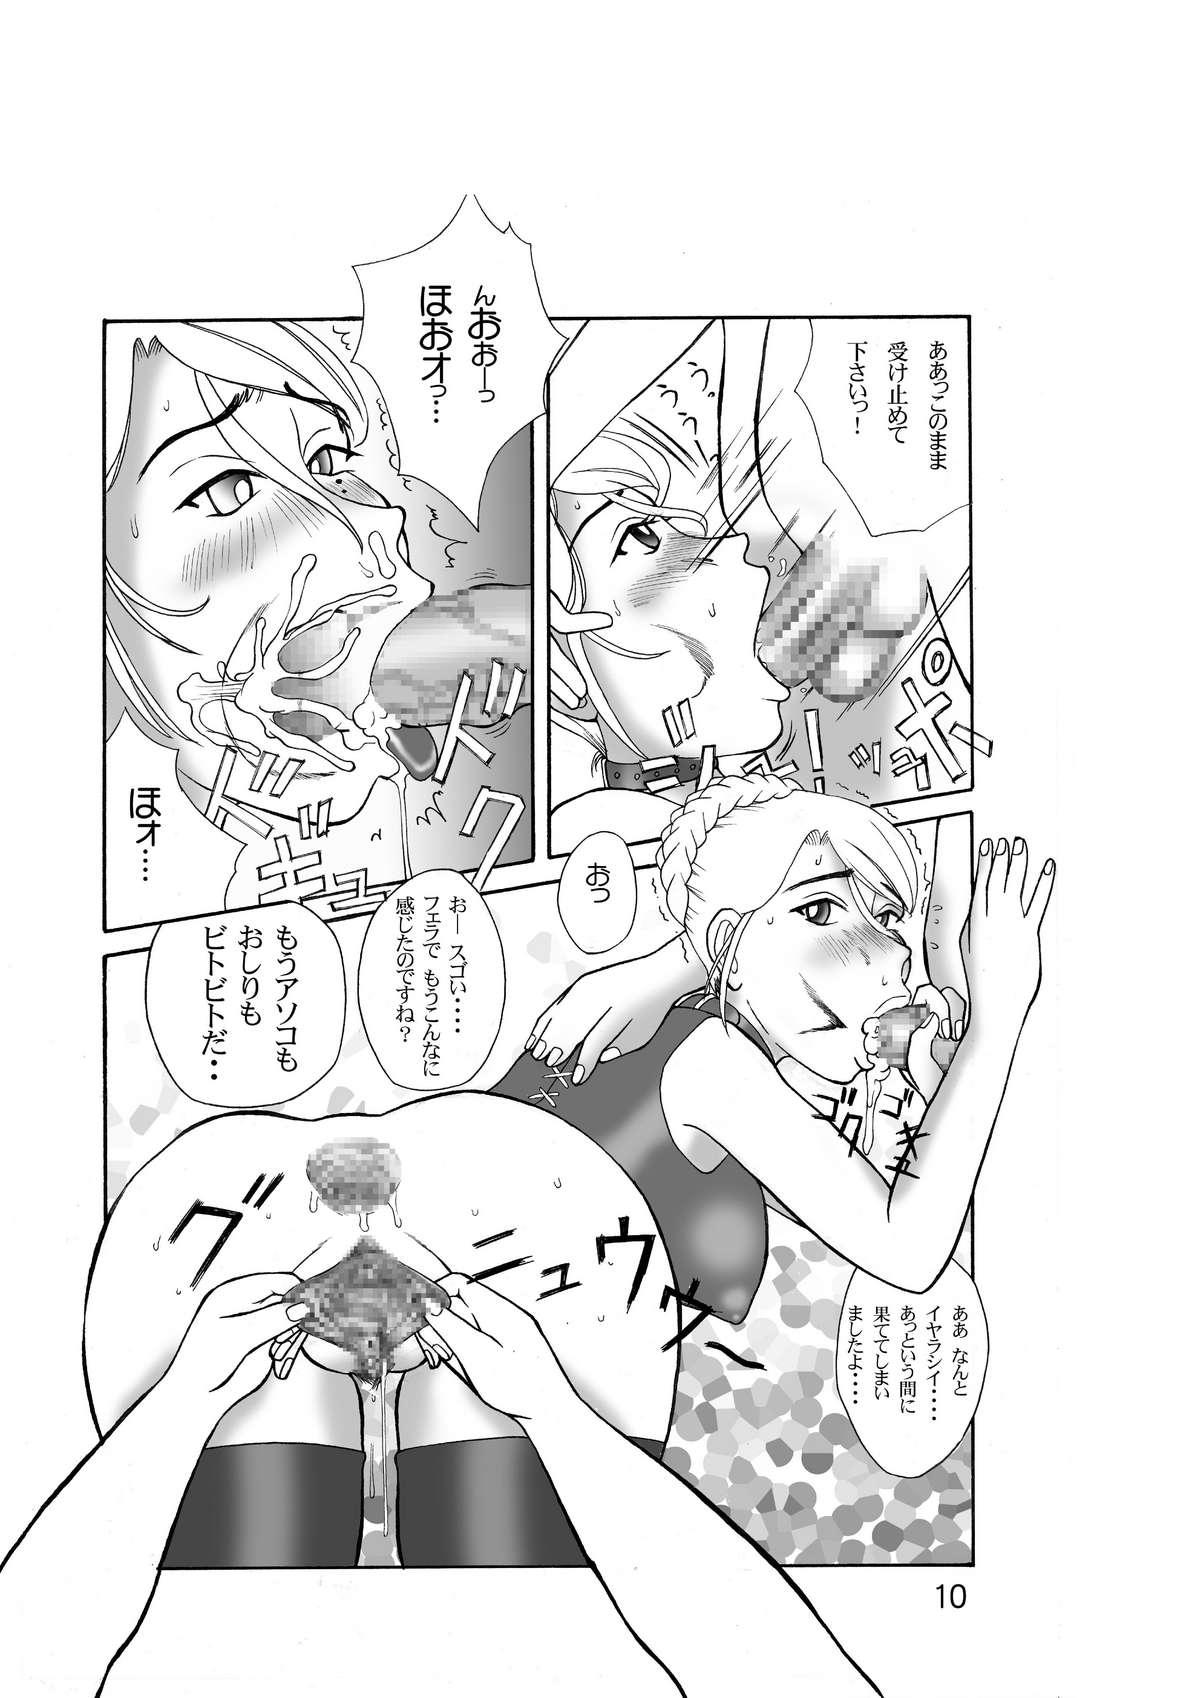 Gloryholes Onee-san wa Yoru Aegu - Ashita no nadja Transvestite - Page 10